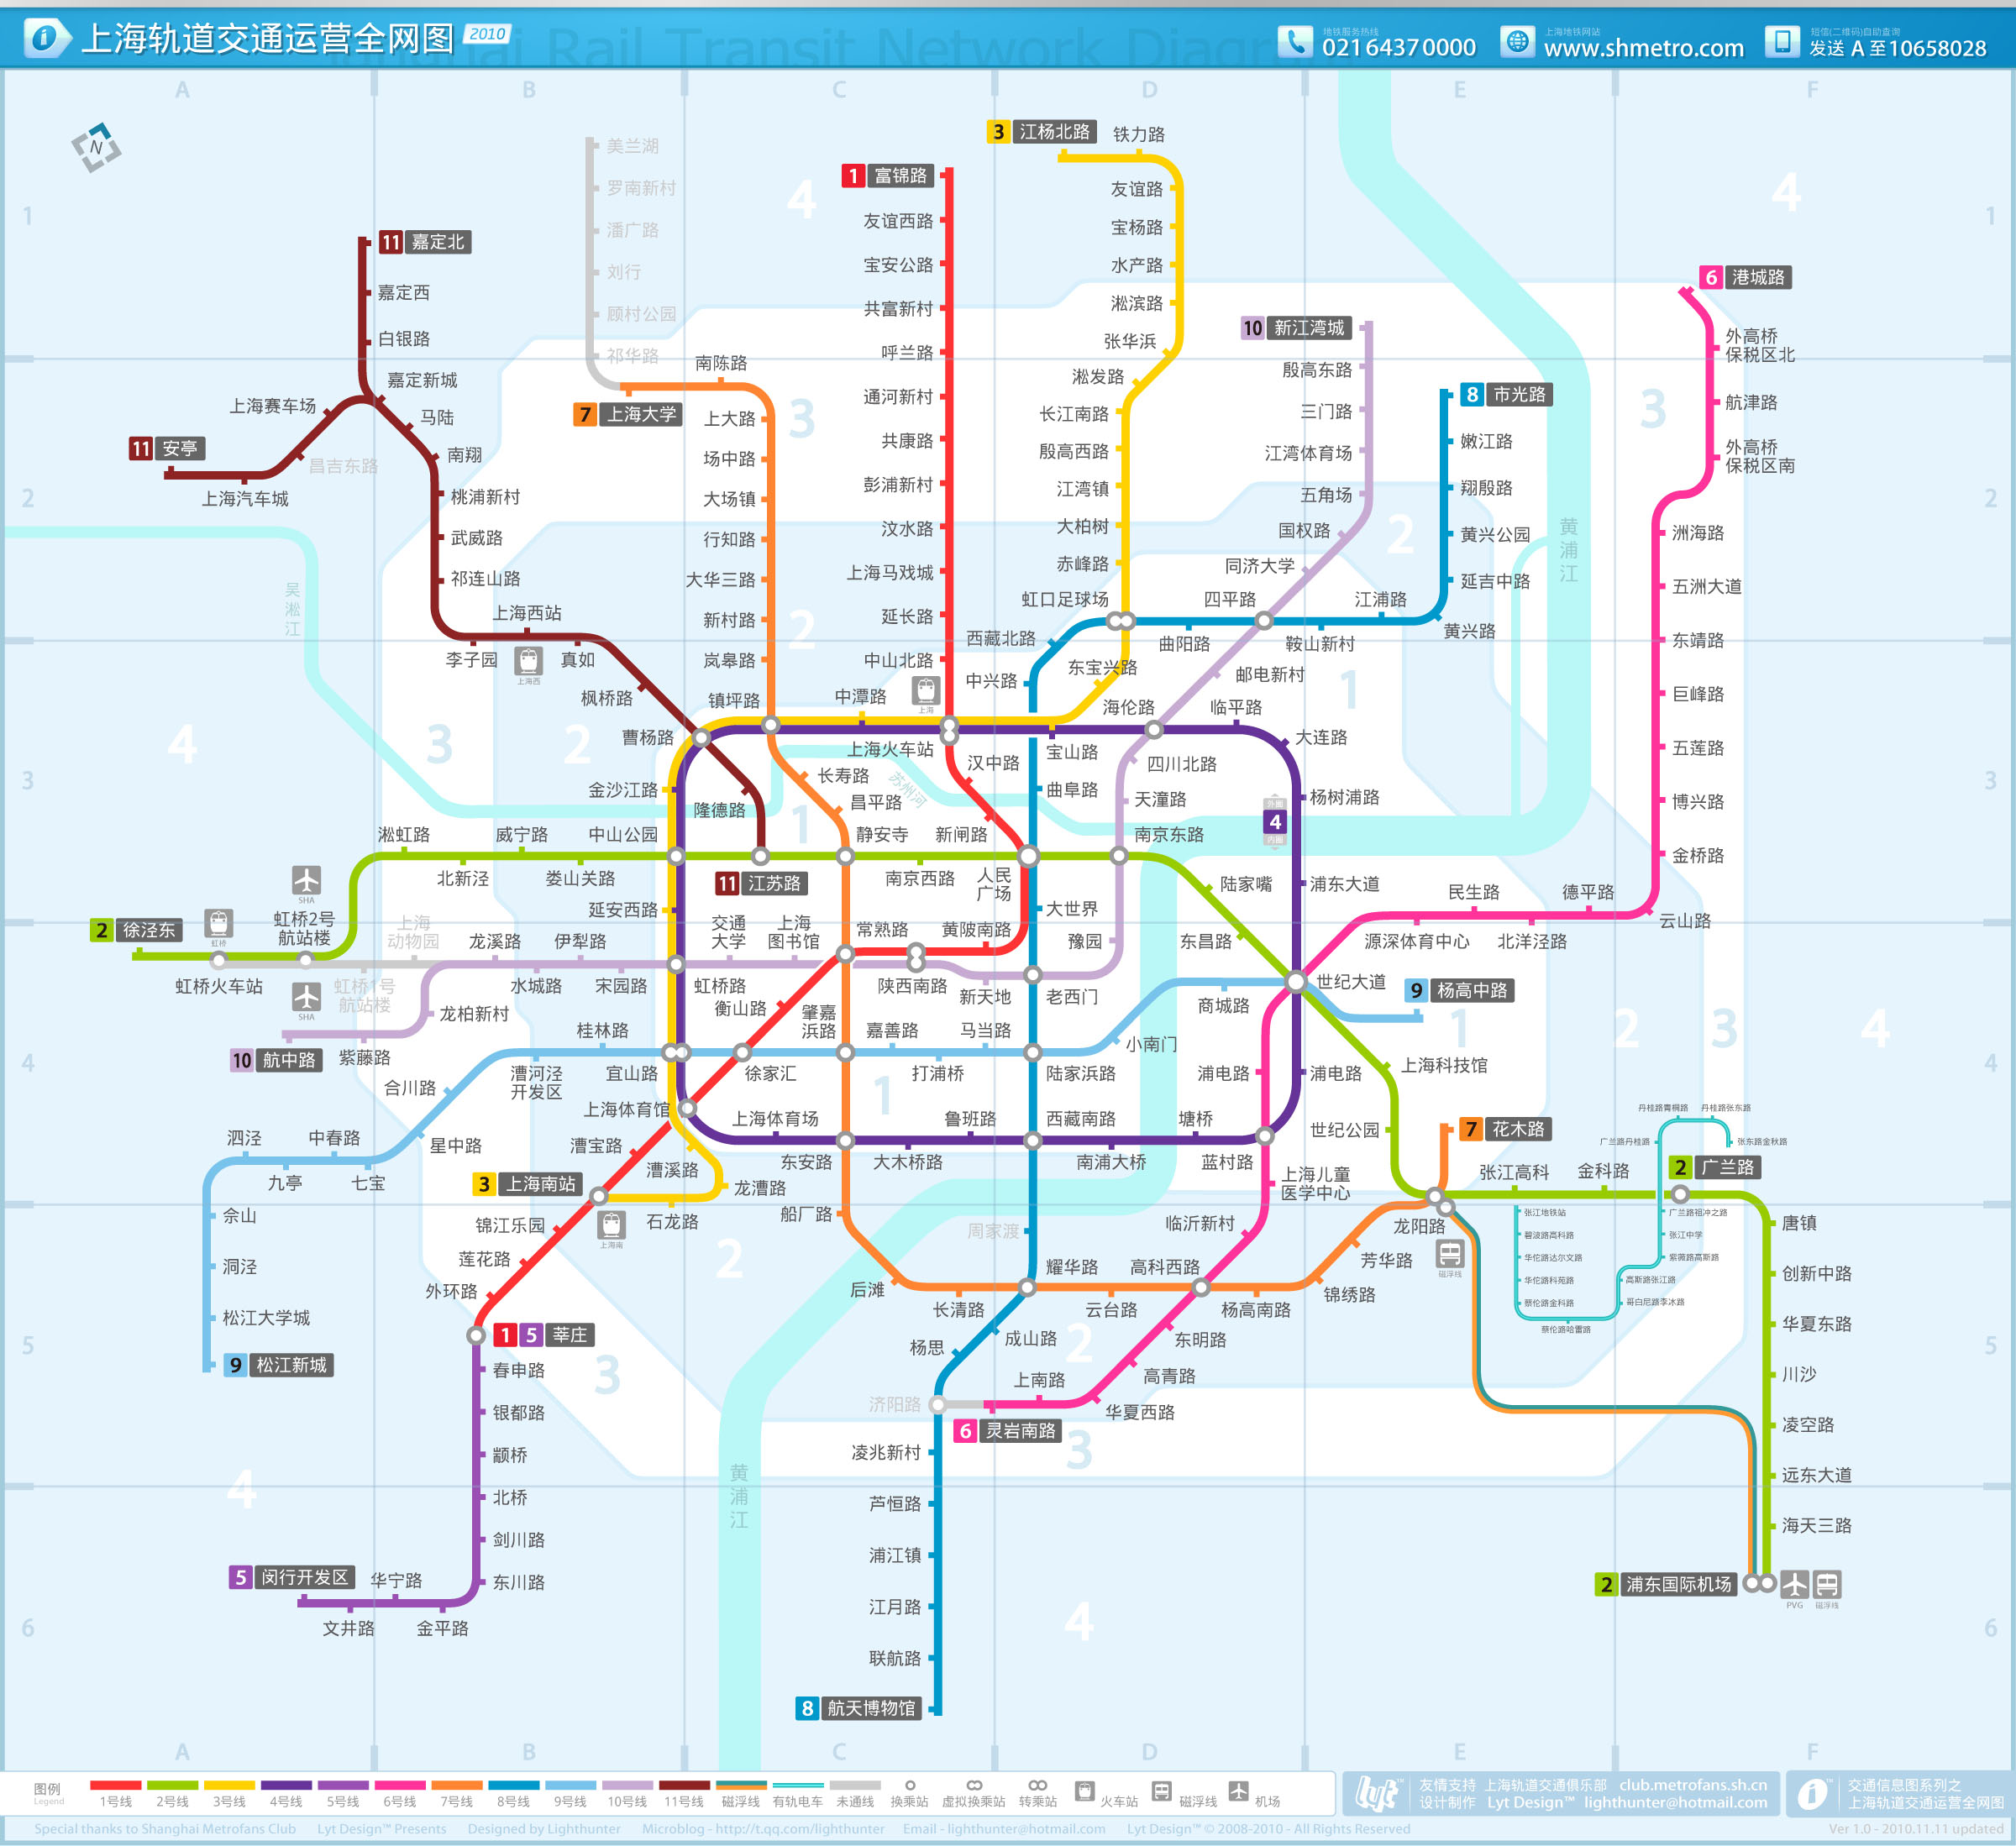 上海轨道交通2022示意图与发展史资料 - 哔哩哔哩